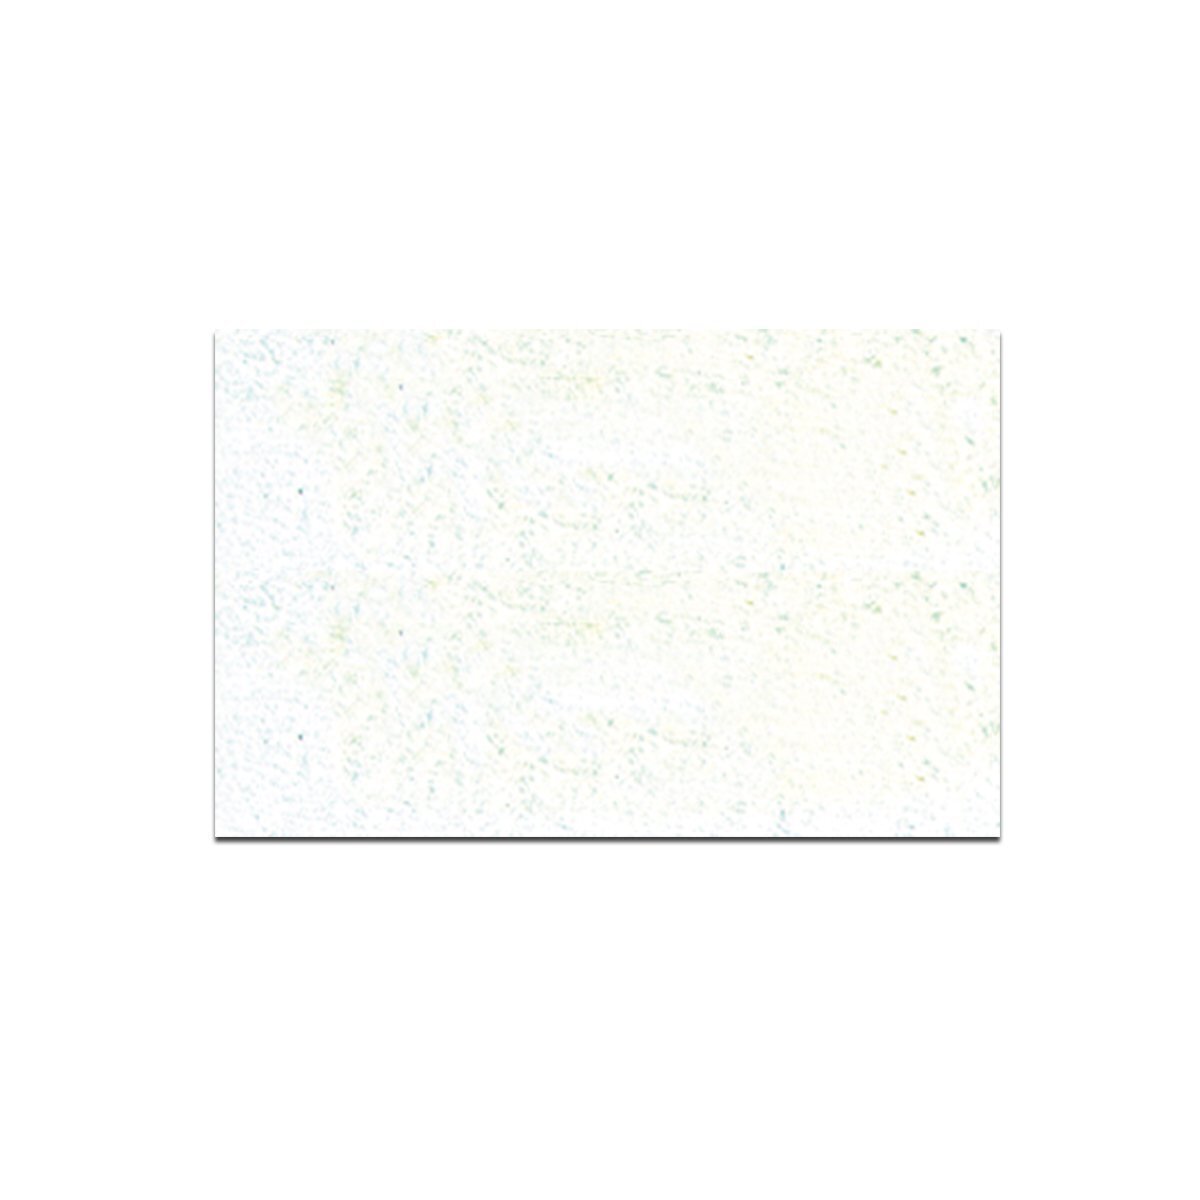 Bastelkrepp 250 x 50 cm, 10 Rollen, Weiss